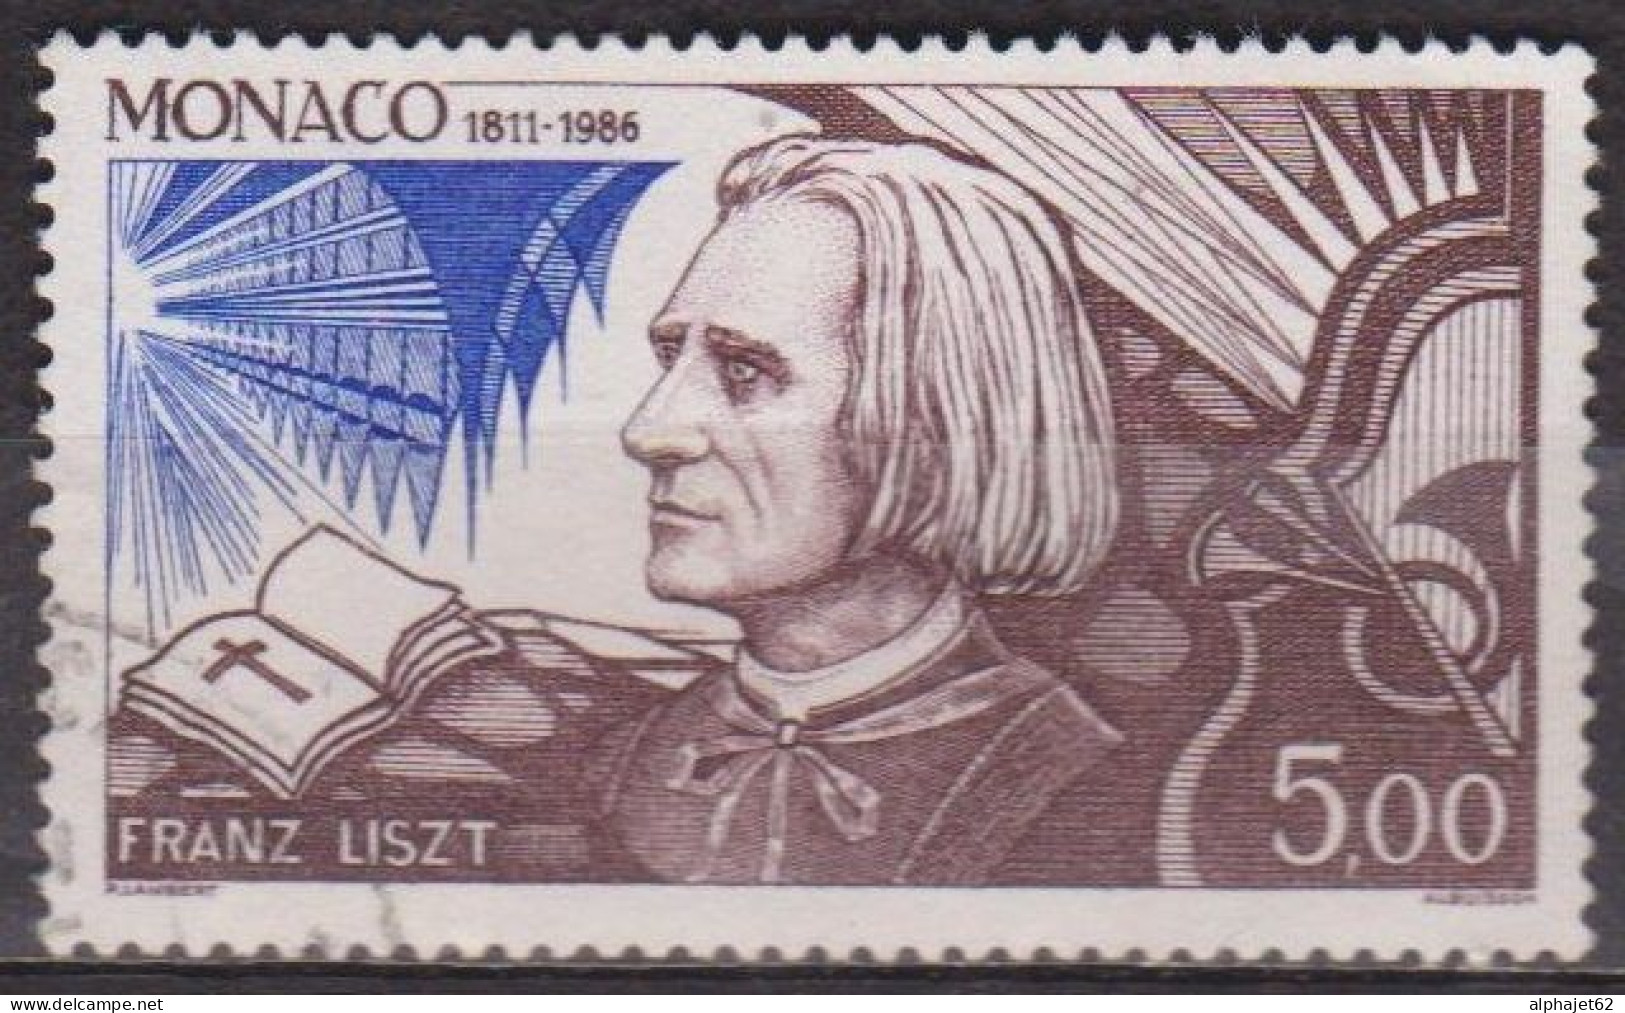 Musque - MONACO - Franz Liszt, Compositeur - N° 1548 - 1986 - Used Stamps